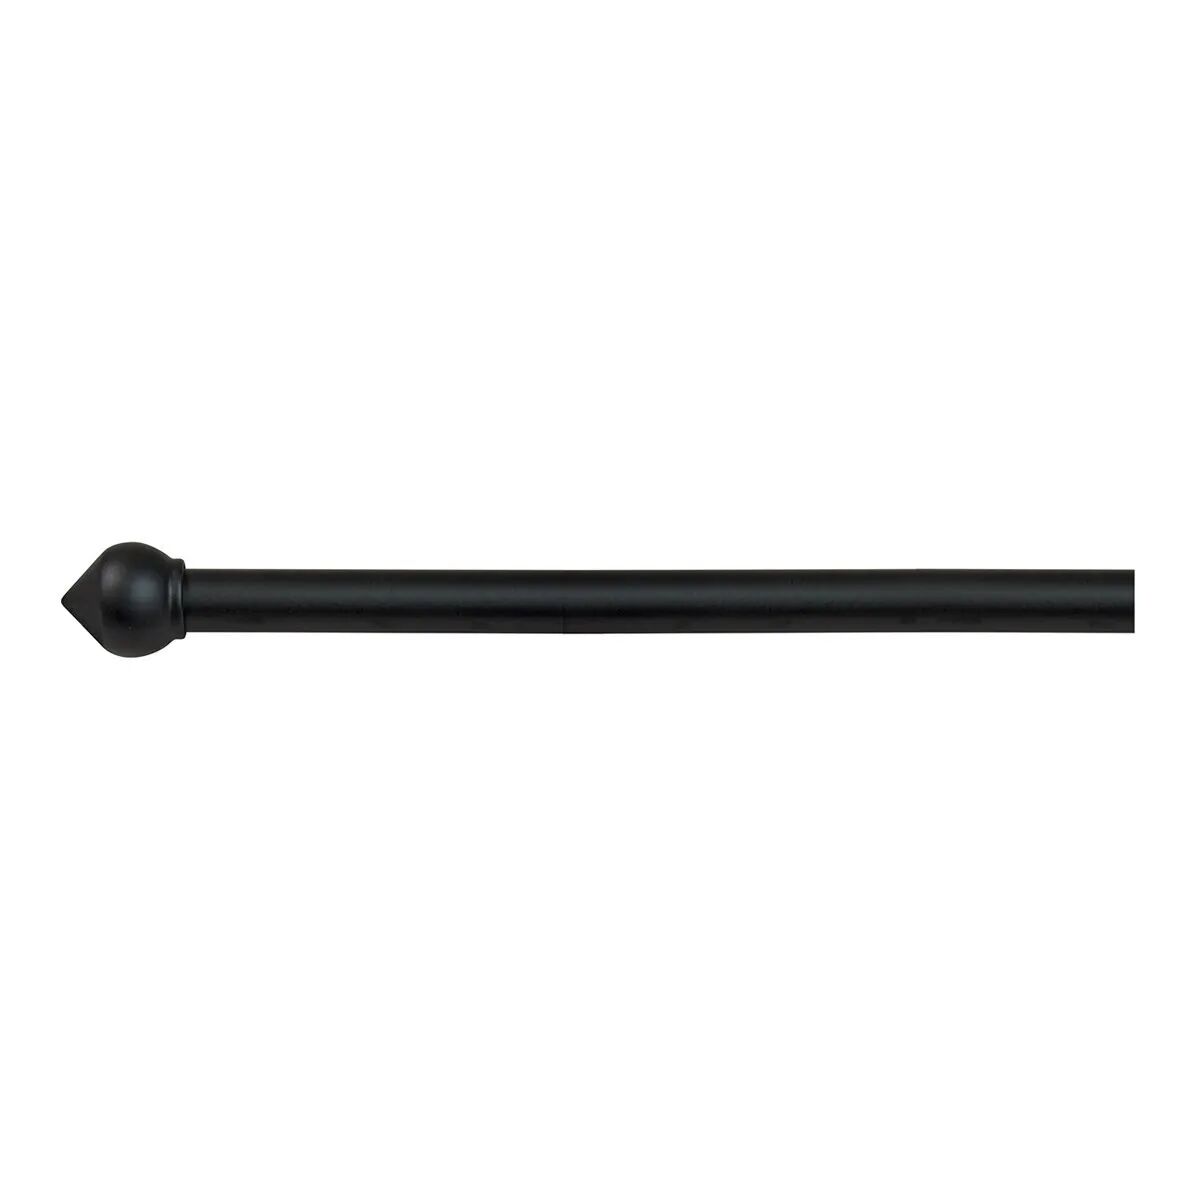 tecnomat bastone per tende bulbo Ø 20-17 mm 160-300 cm ferro nero 3 supporti